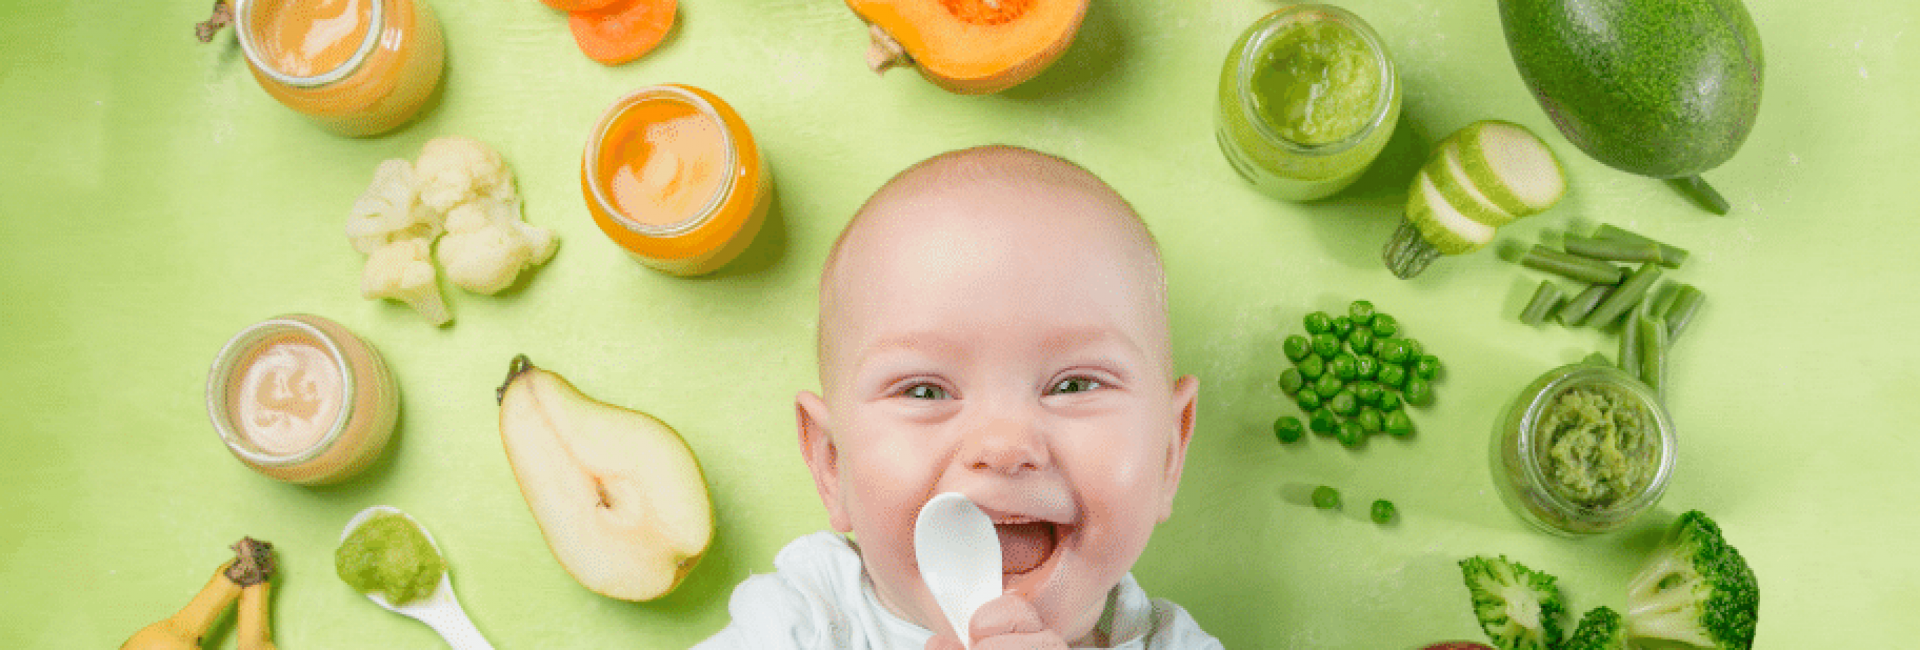 Alimentação do bebé – quando e como começar?